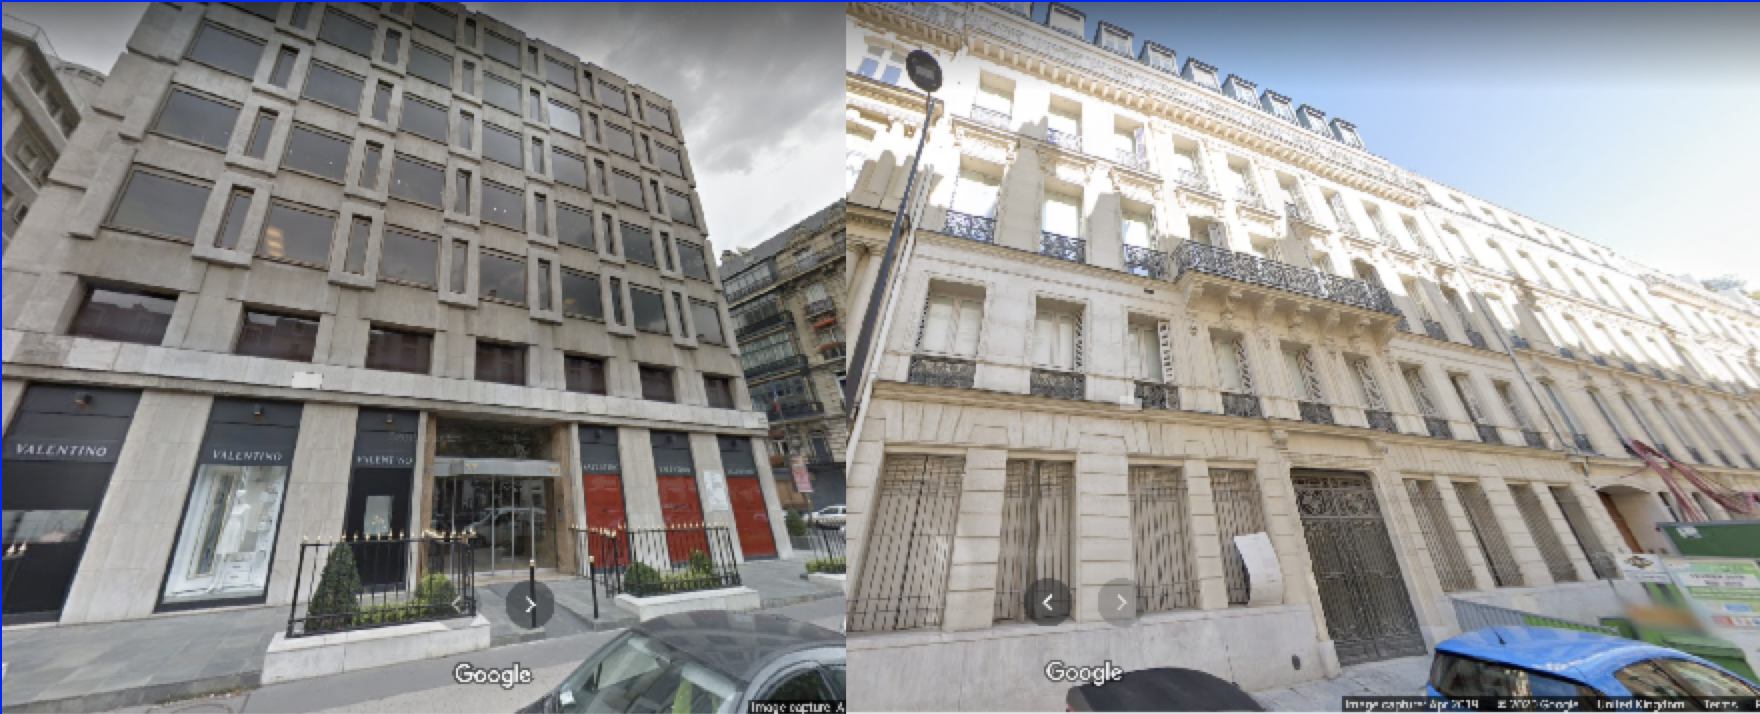 Diego Salazar buildings in Paris